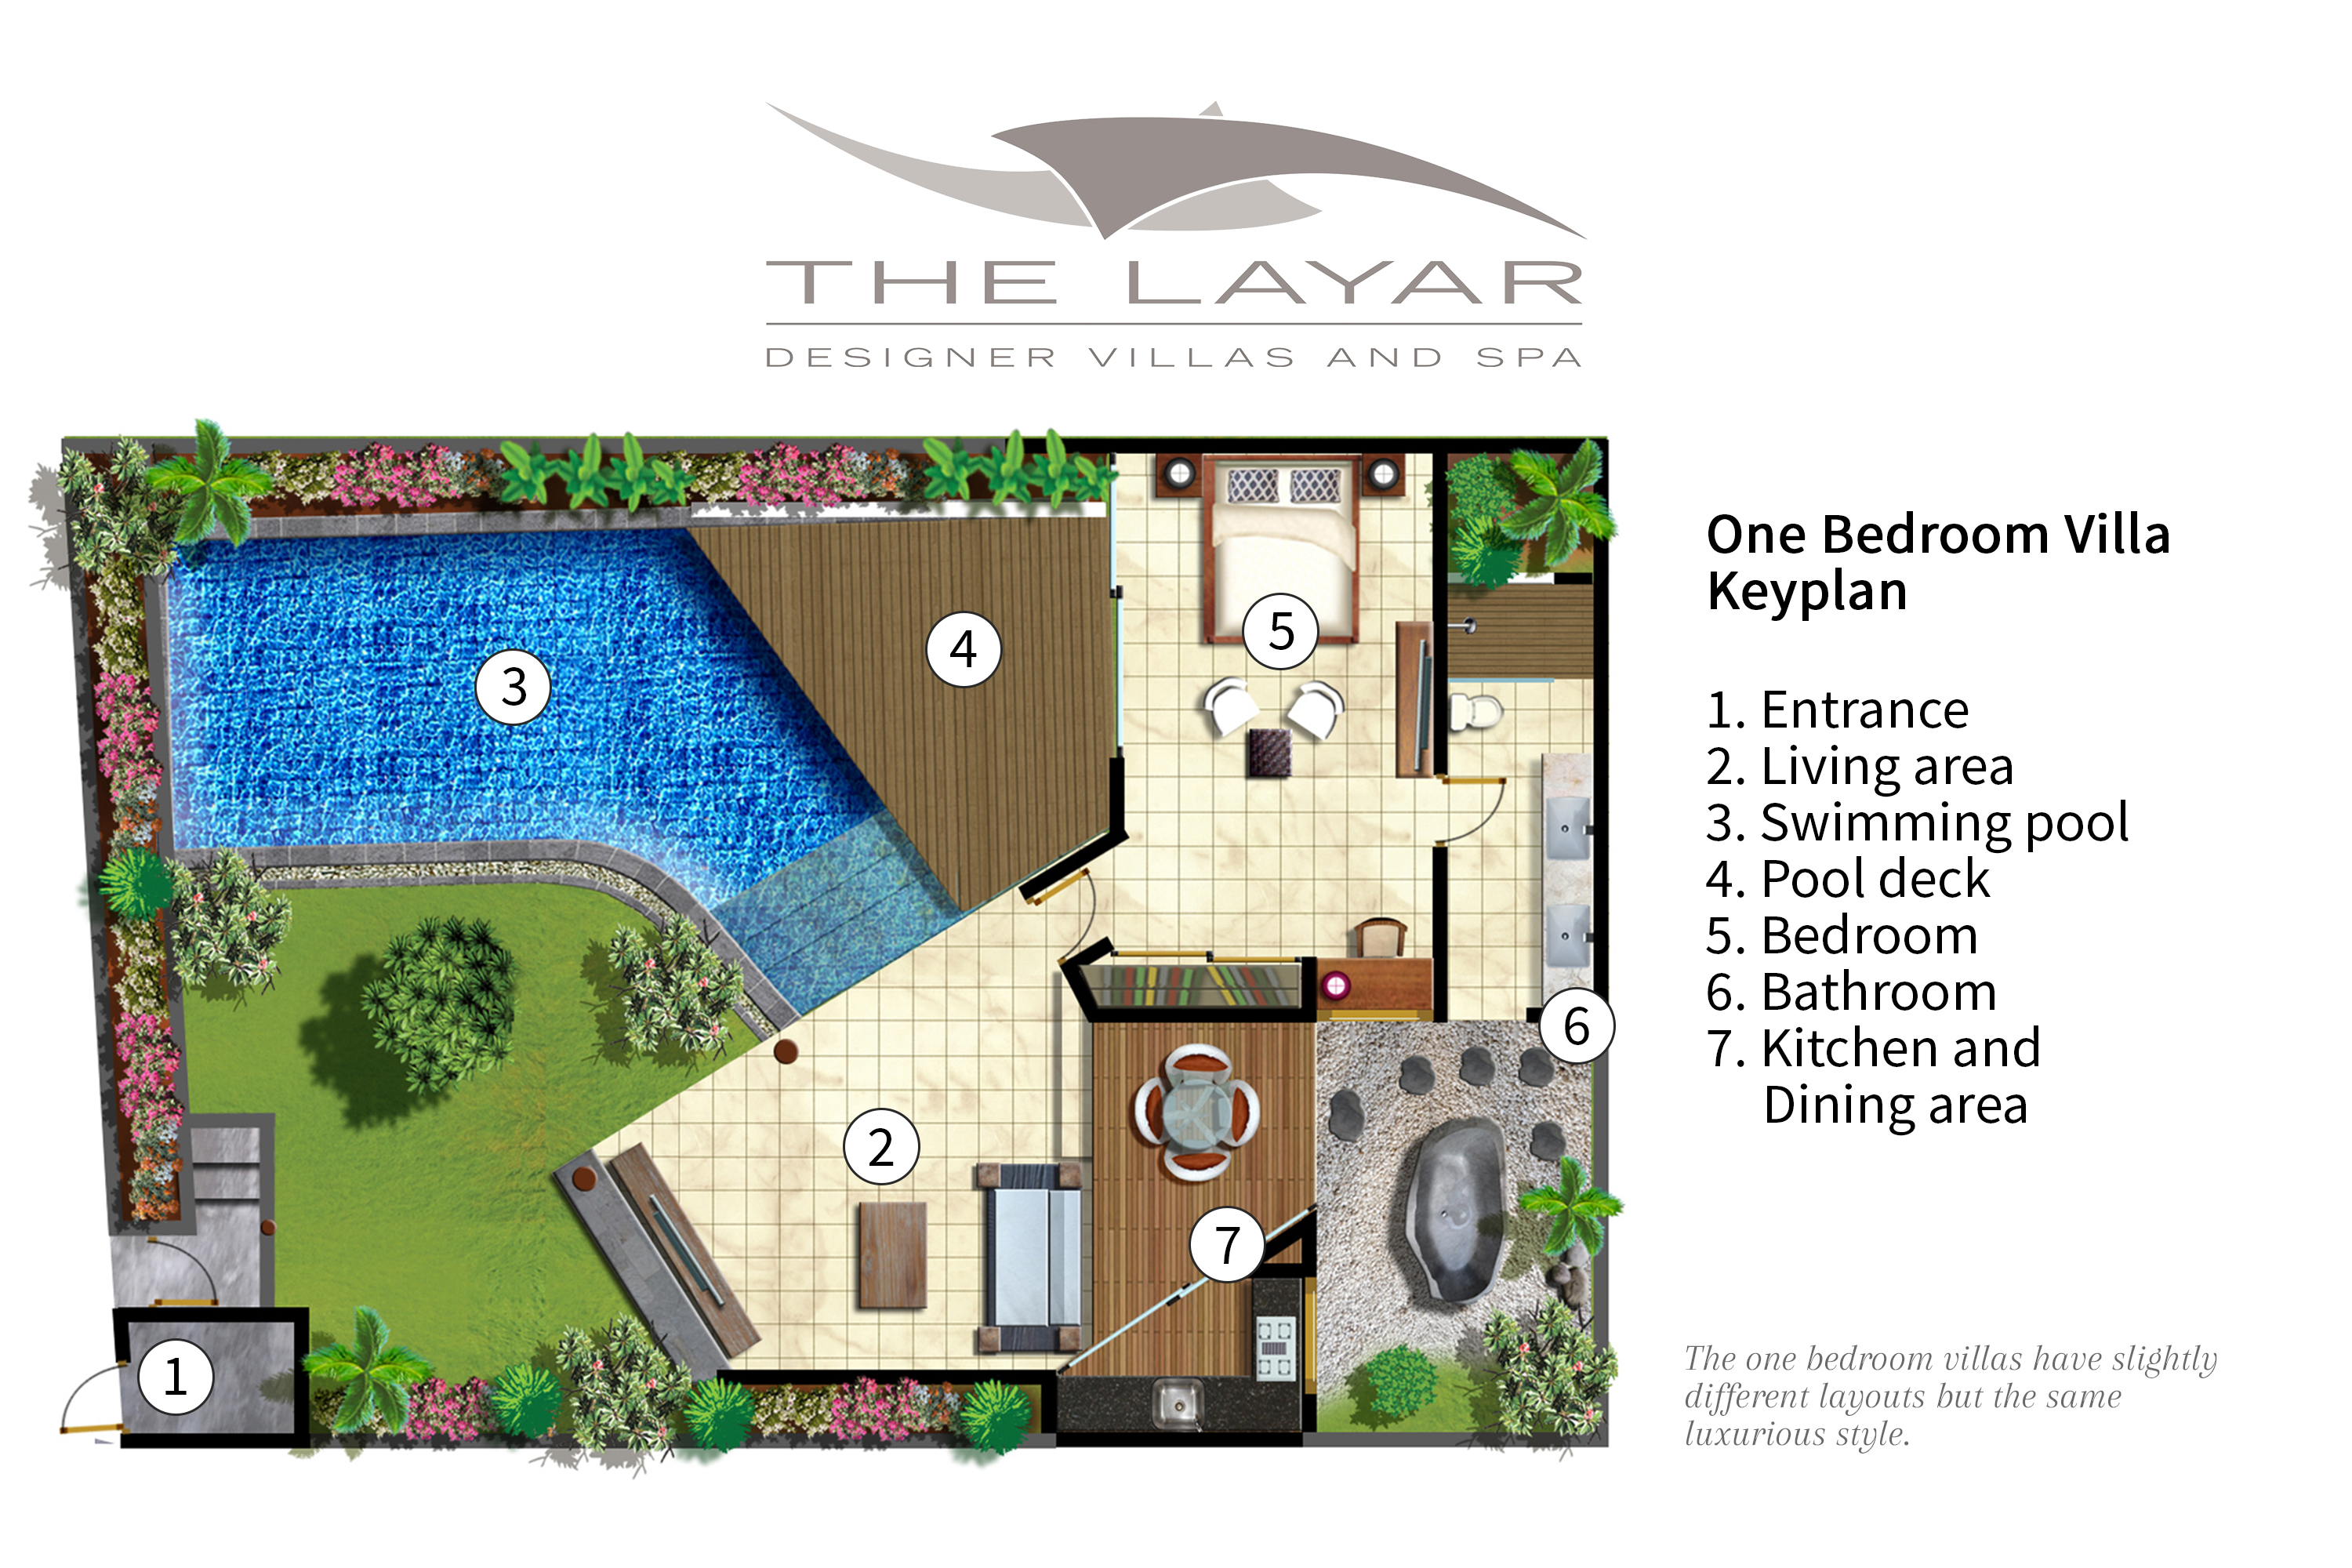 The Layar - one bedroom villa